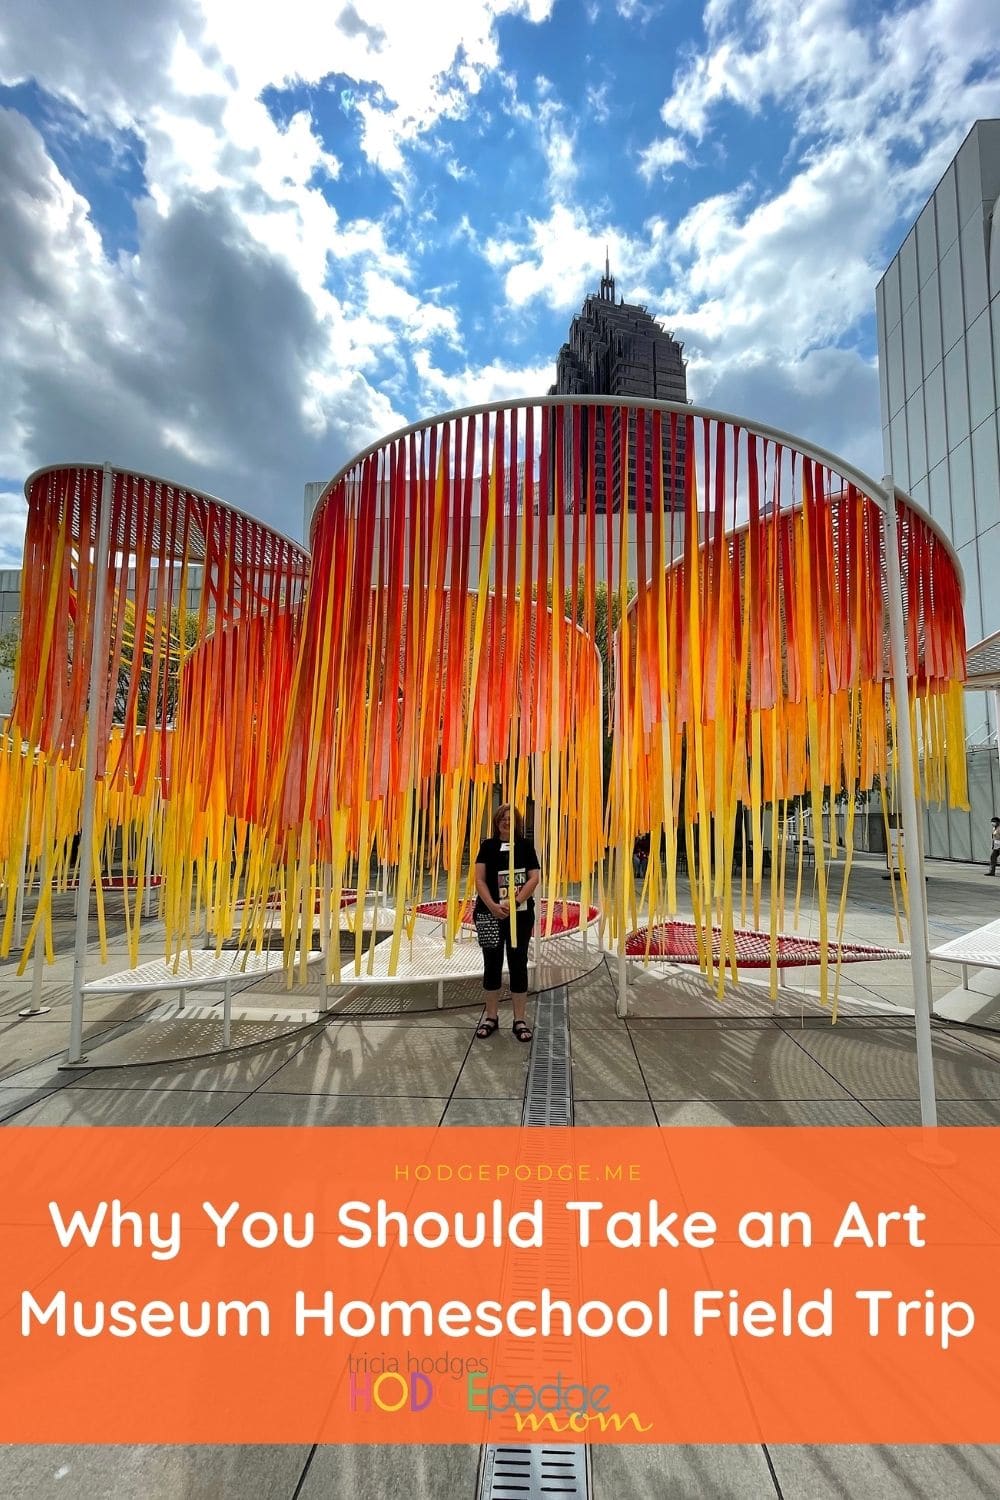 Why You Should Take an Art Museum Homeschool Field Trip